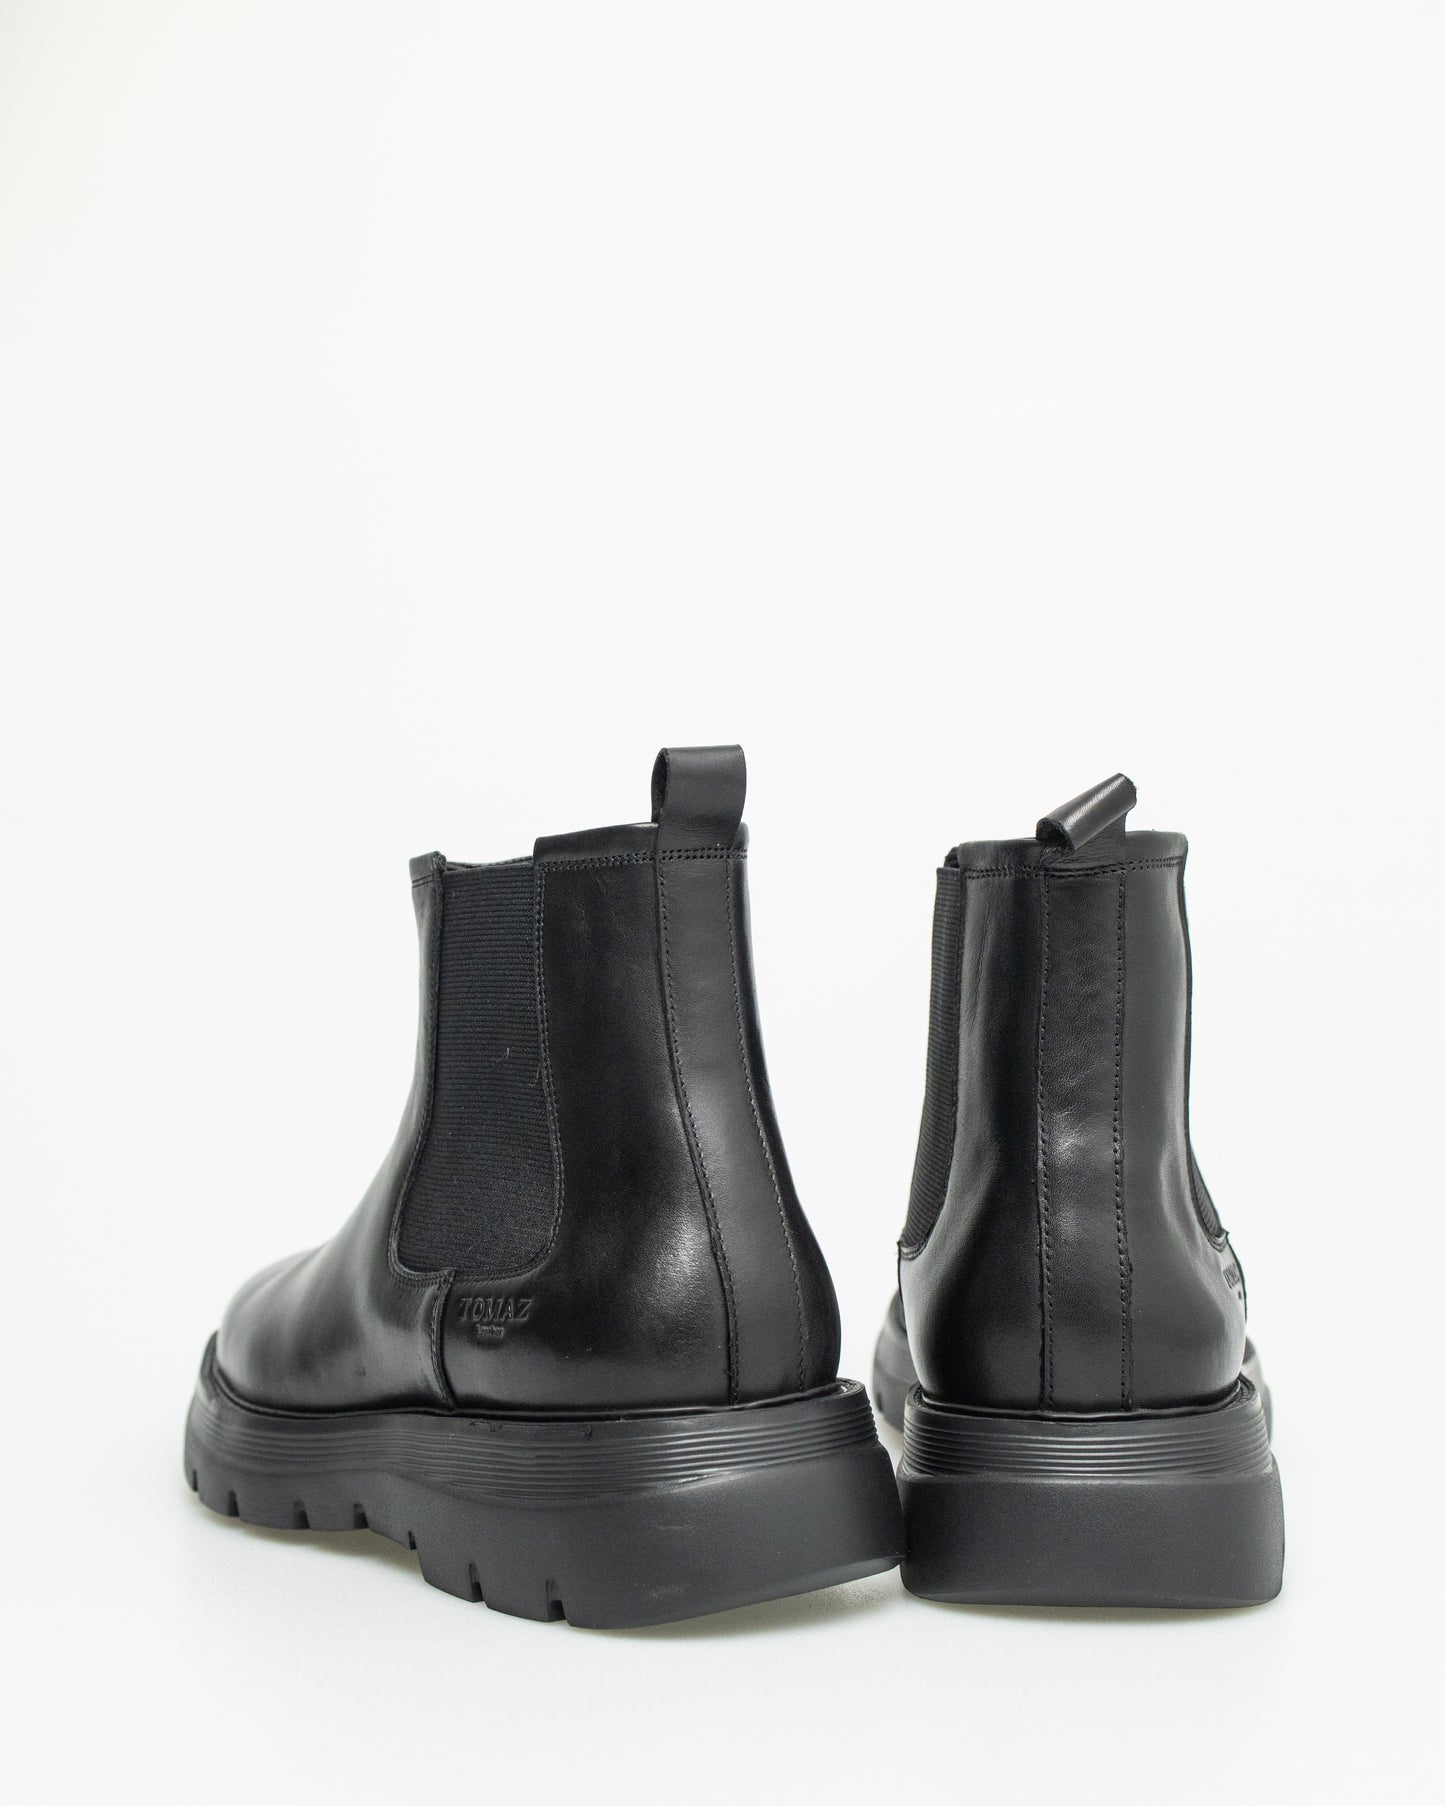 Tomaz F408 Men's Boots (Black)